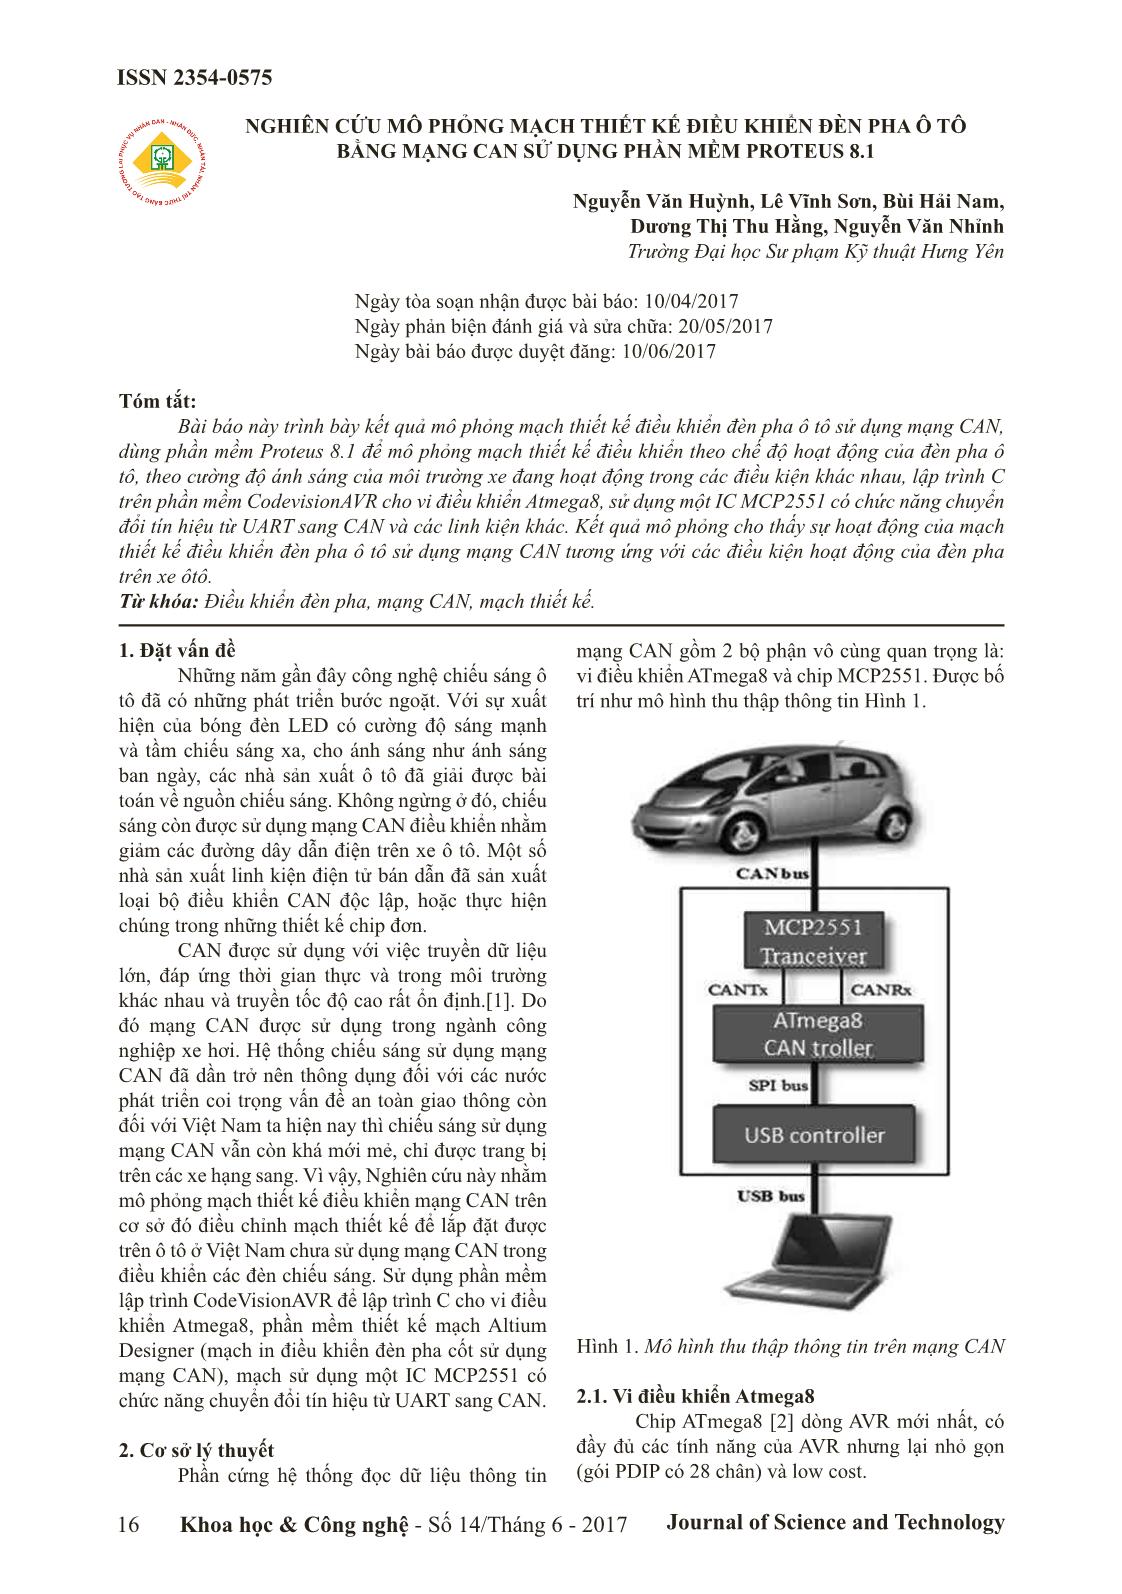 Nghiên cứu mô phỏng mạch thiết kế điều khiển đèn pha ô tô bằng mạng can sử dụng phần mềm proteus 8.1 trang 1